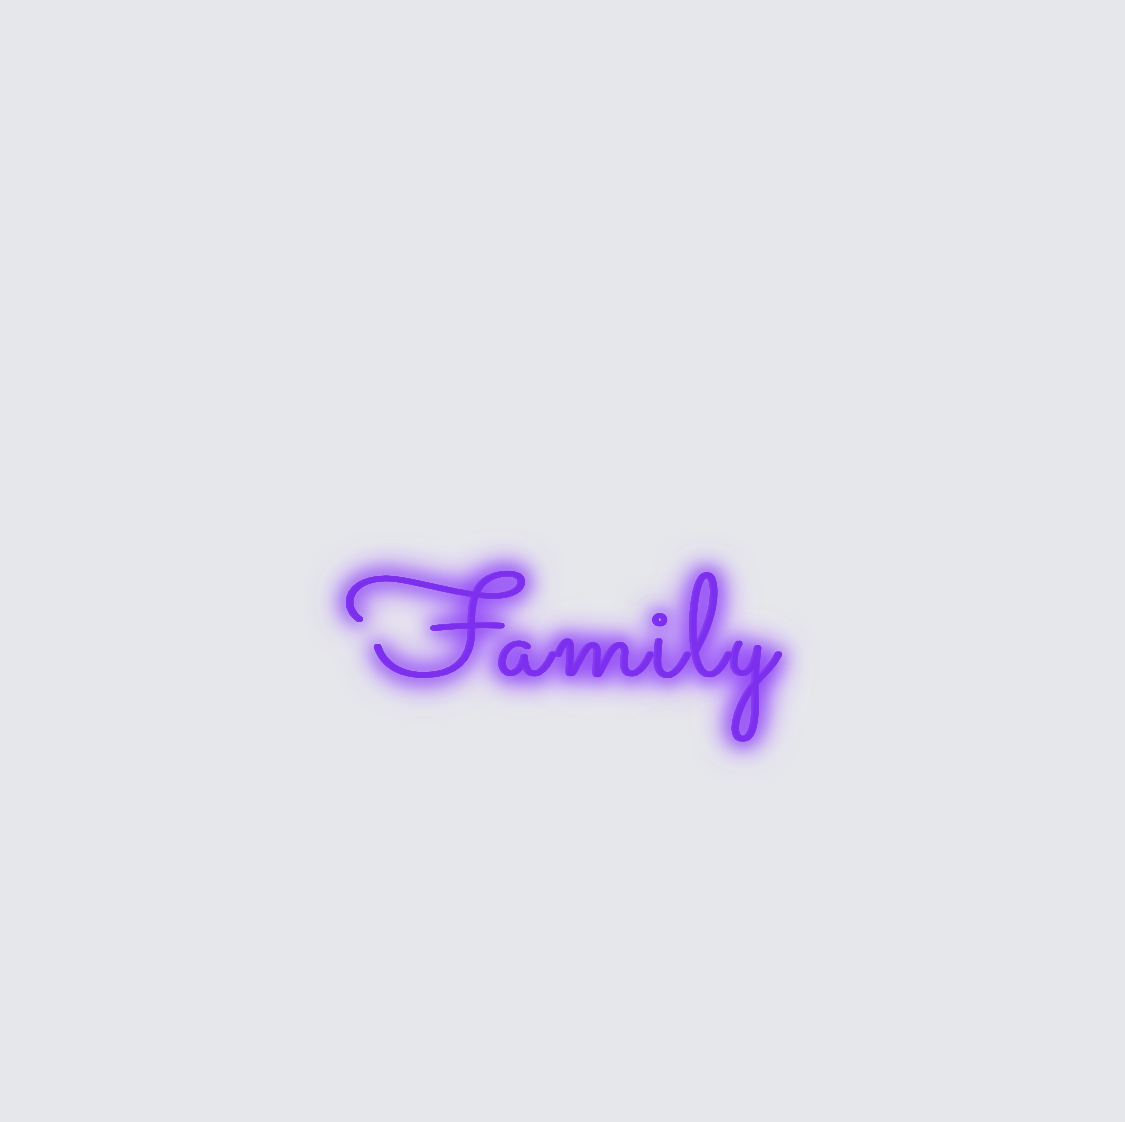 Custom neon sign - Family